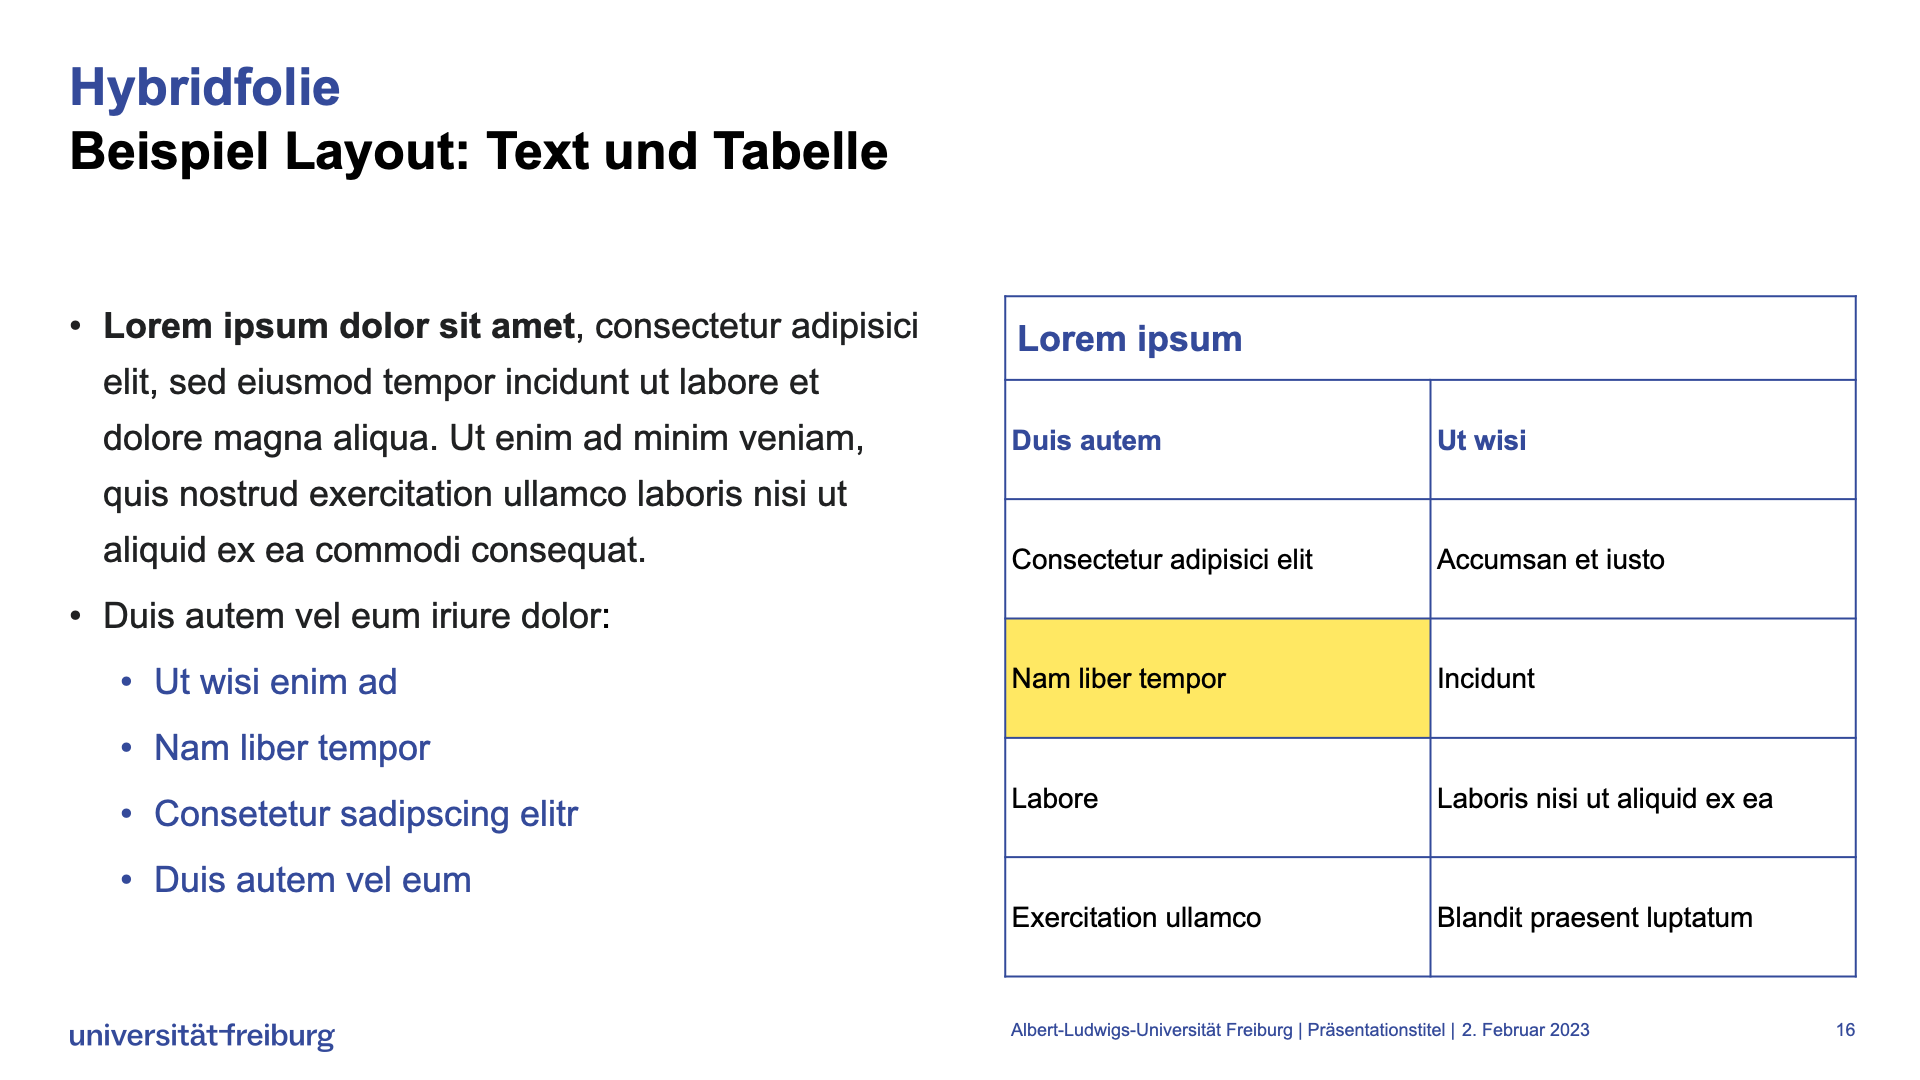 Vorlage Hybridfolie mit Text (rechts) und Tabelle